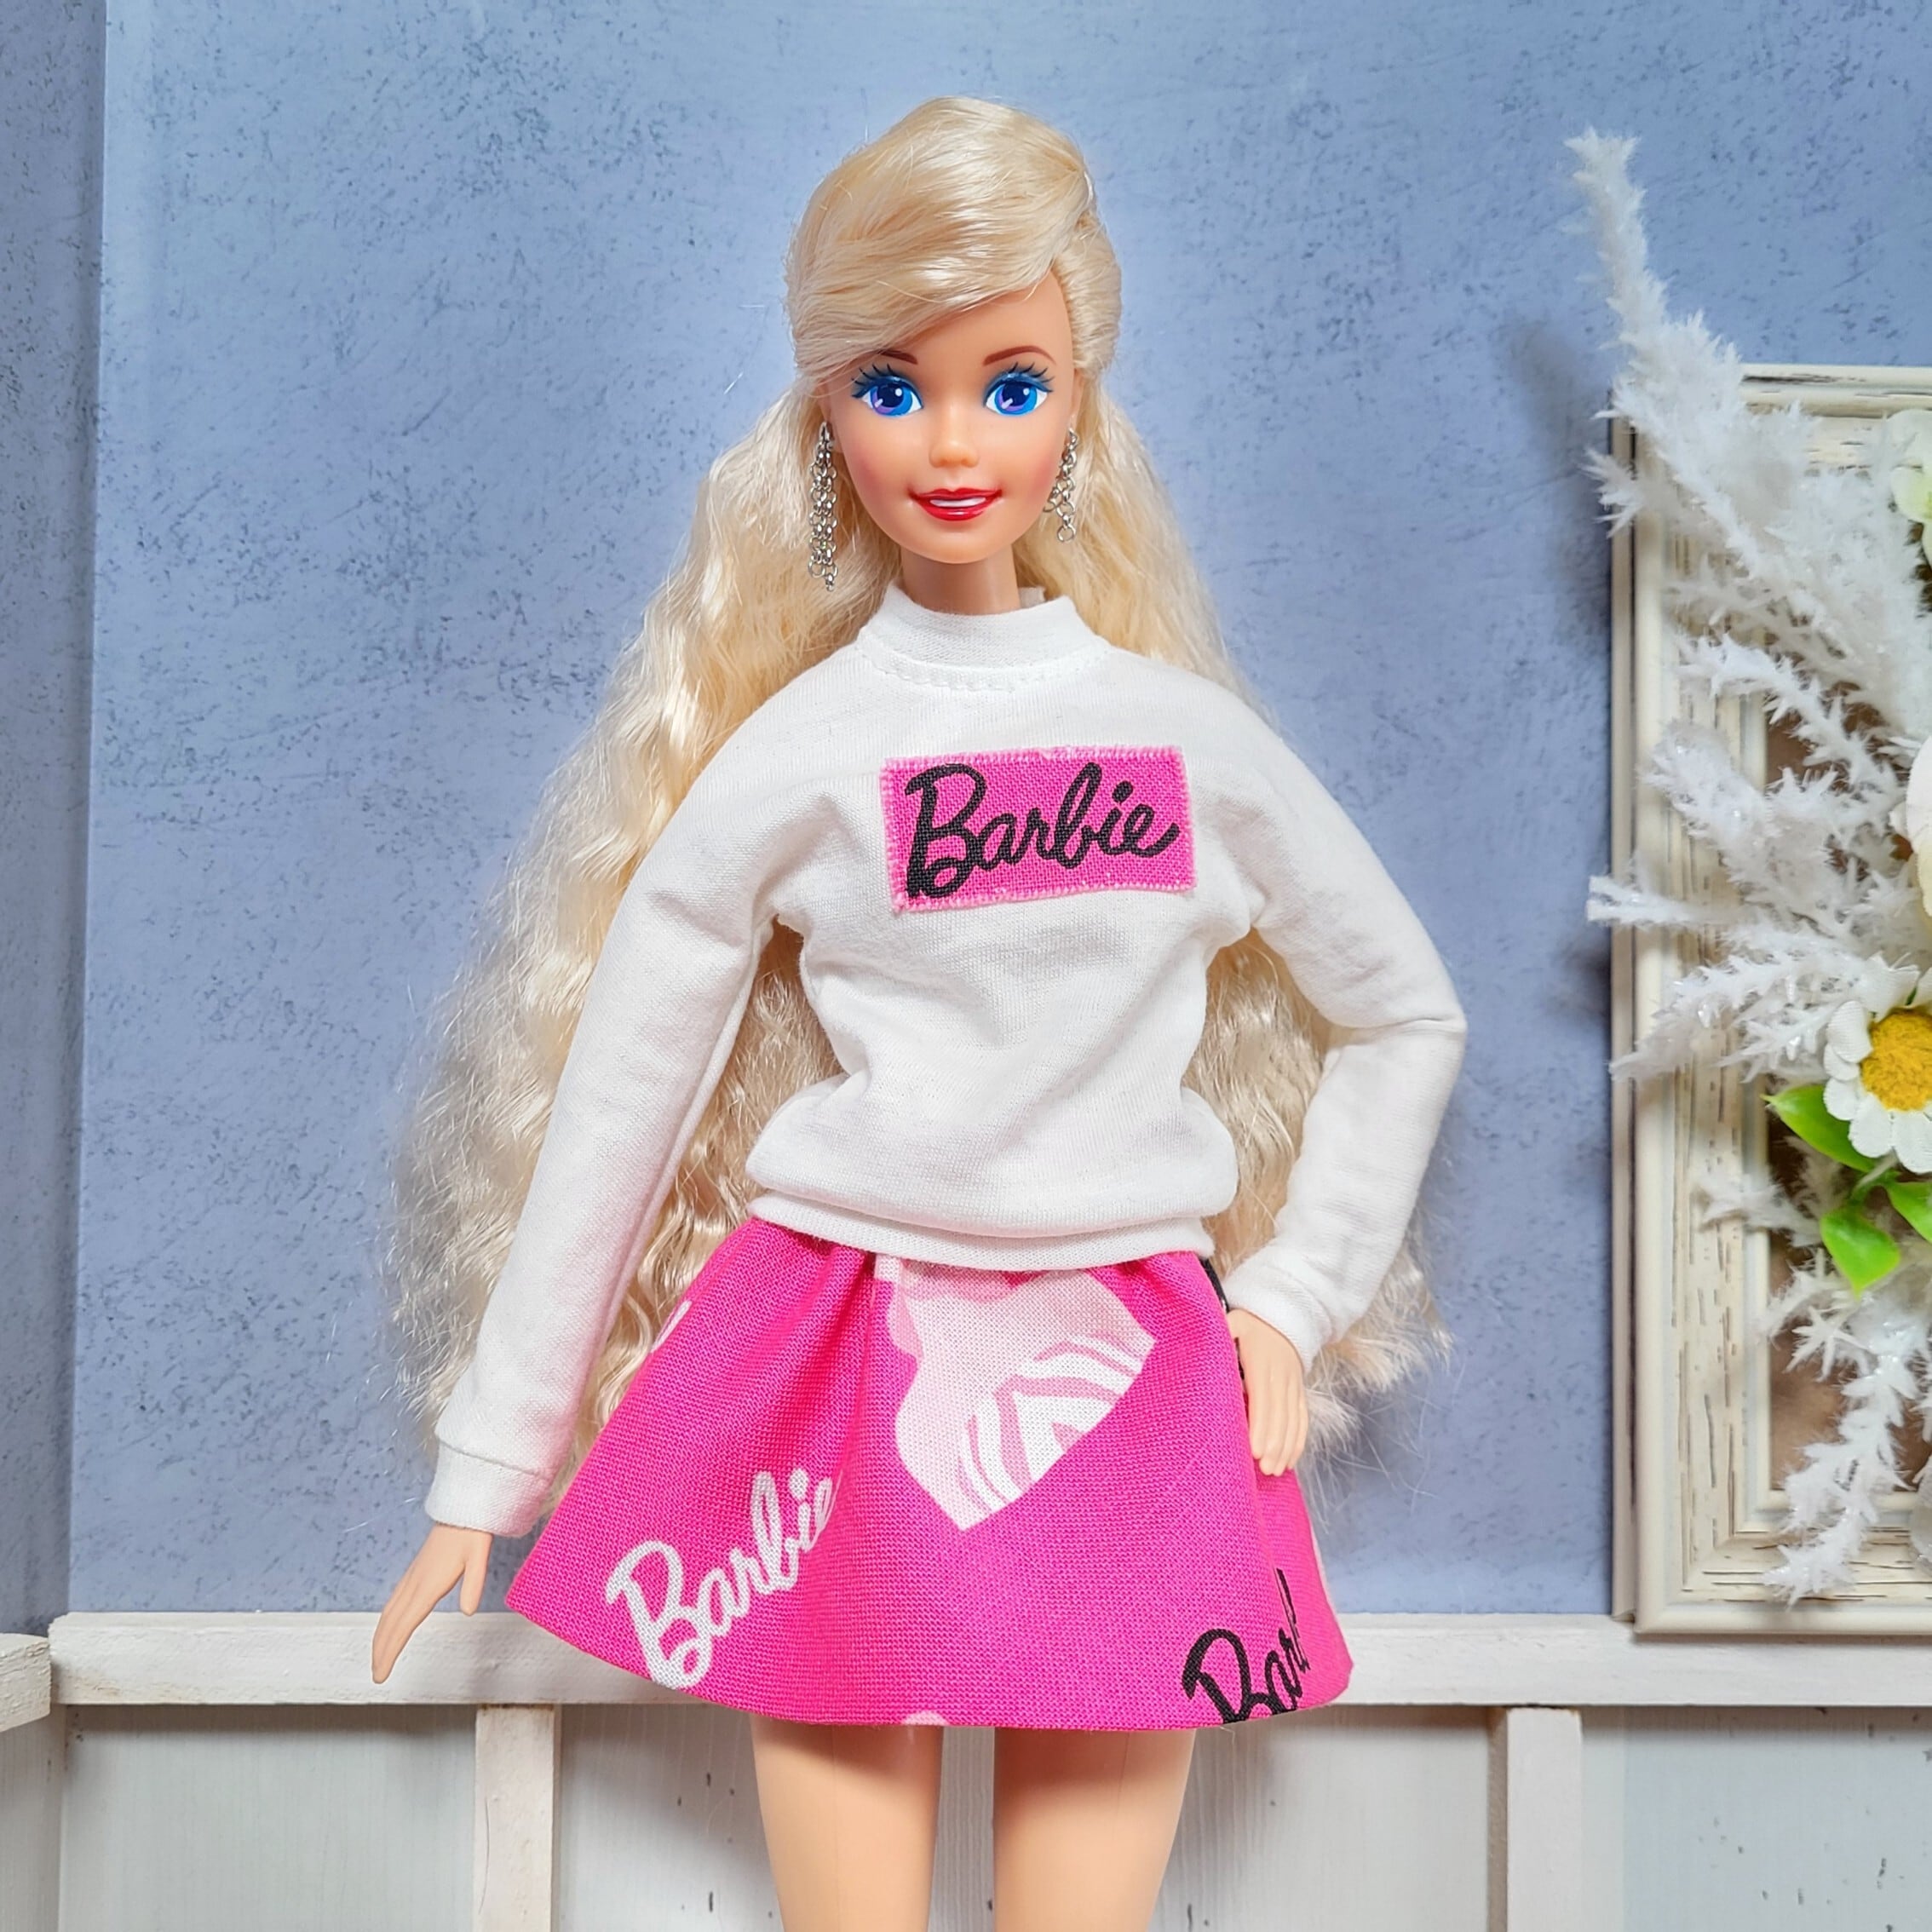 Barbie スカート